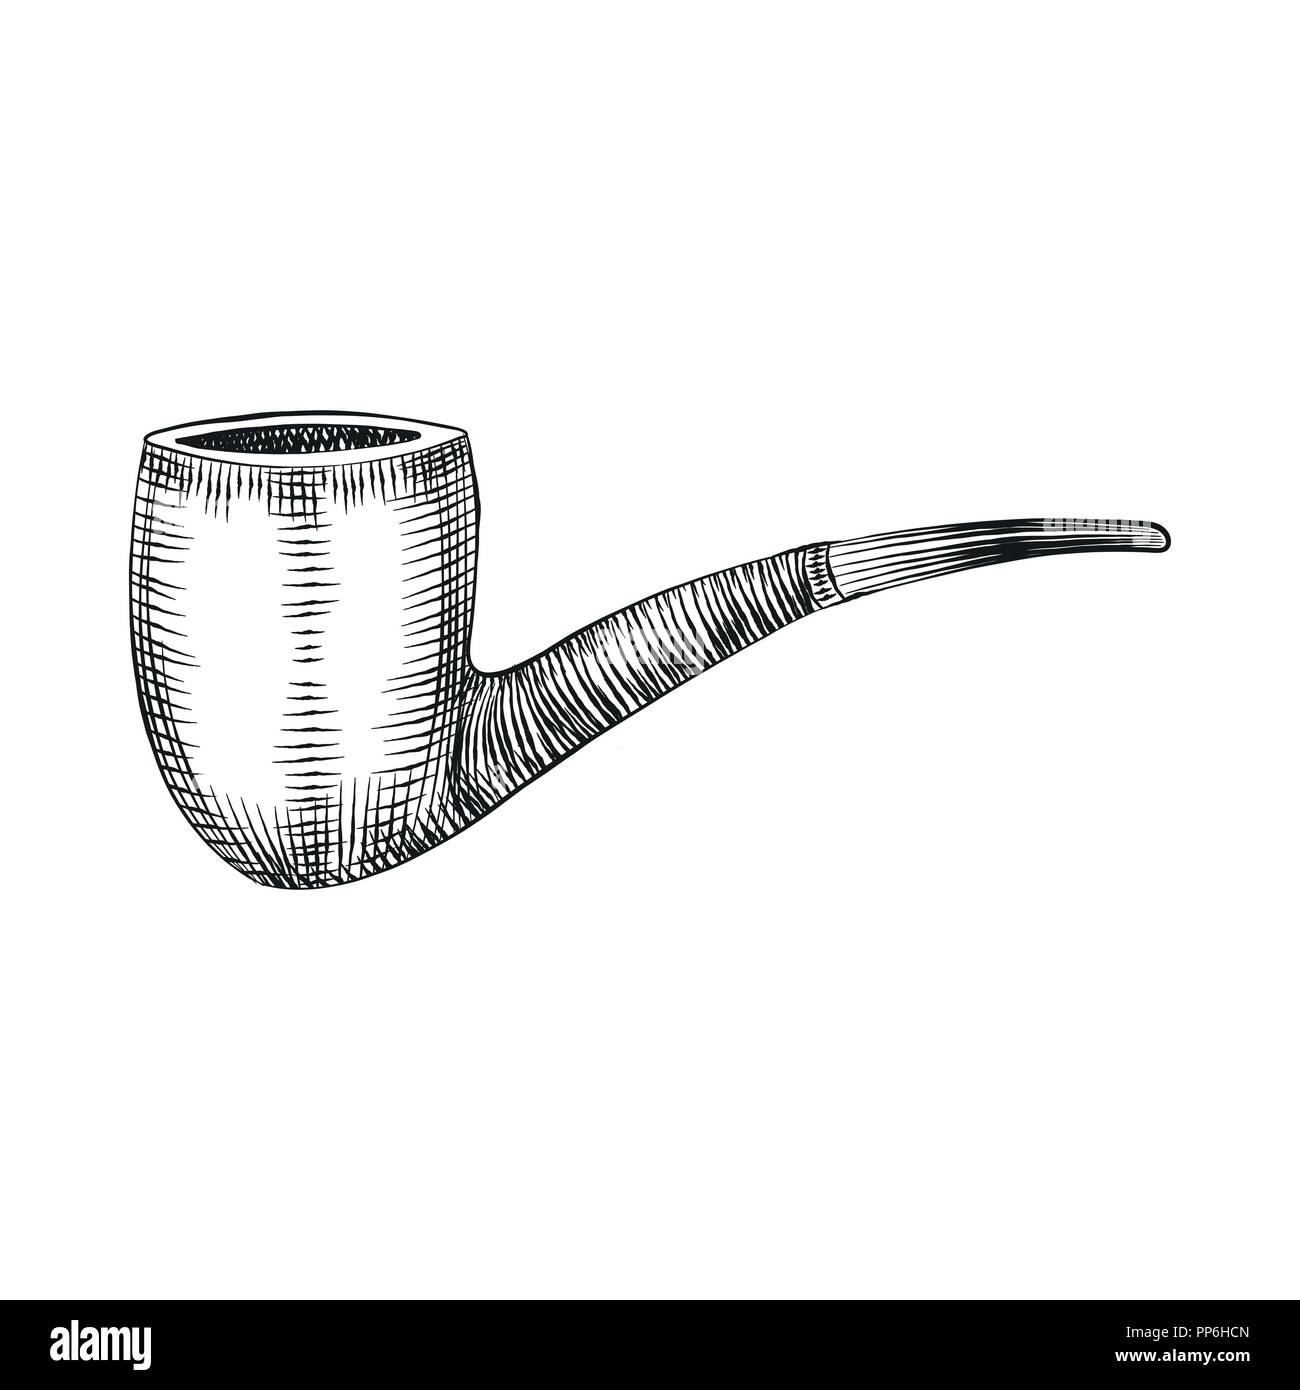 Holz- Tabakpfeife, Rauchen Holzpfeife. Vektor isoliert Abbildung in Hand gezeichnet Gravur Stil. Stock Vektor